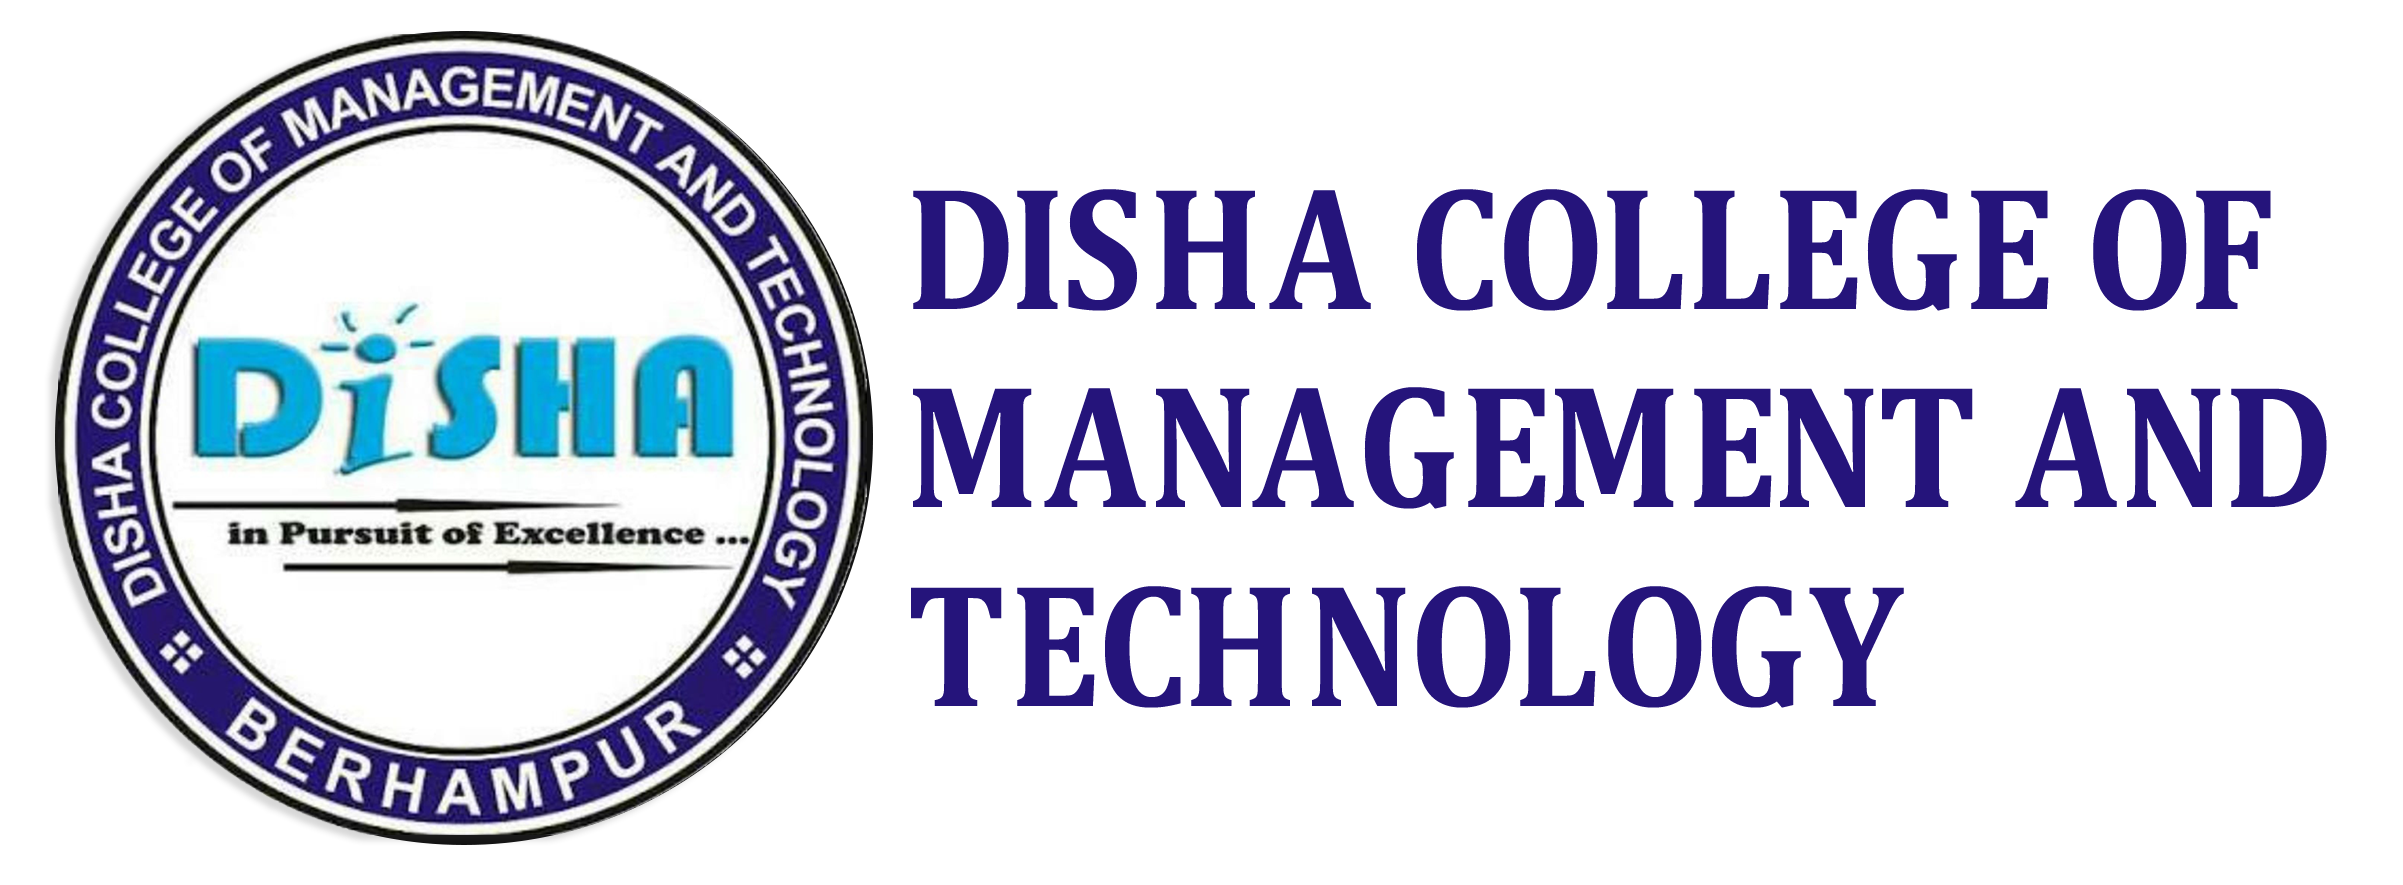 Disha College